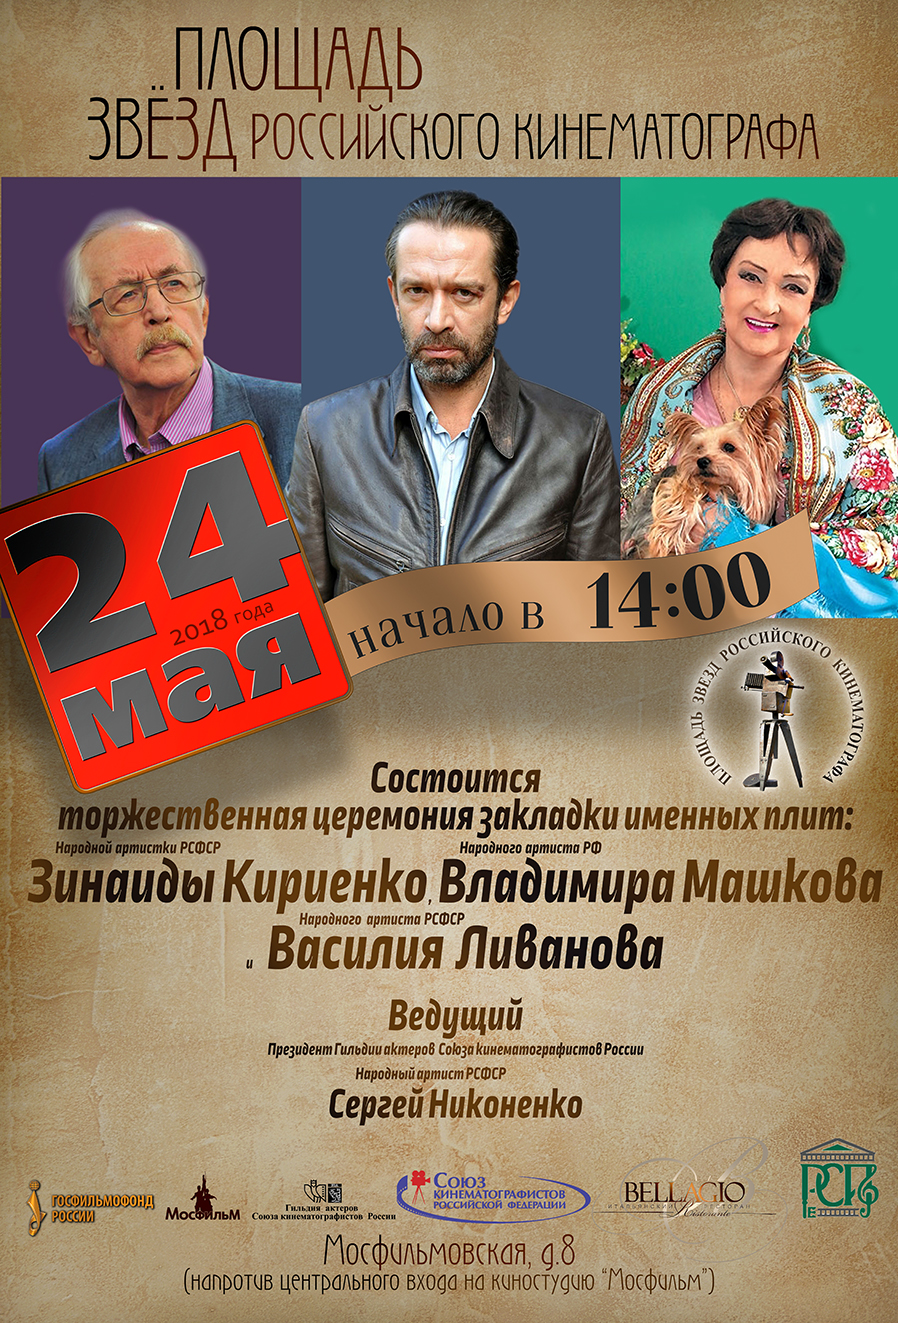 Церемония закладки именных плит знаменитых артистов на Площади звезд российского кинематографа пройдет при поддержке НФПП